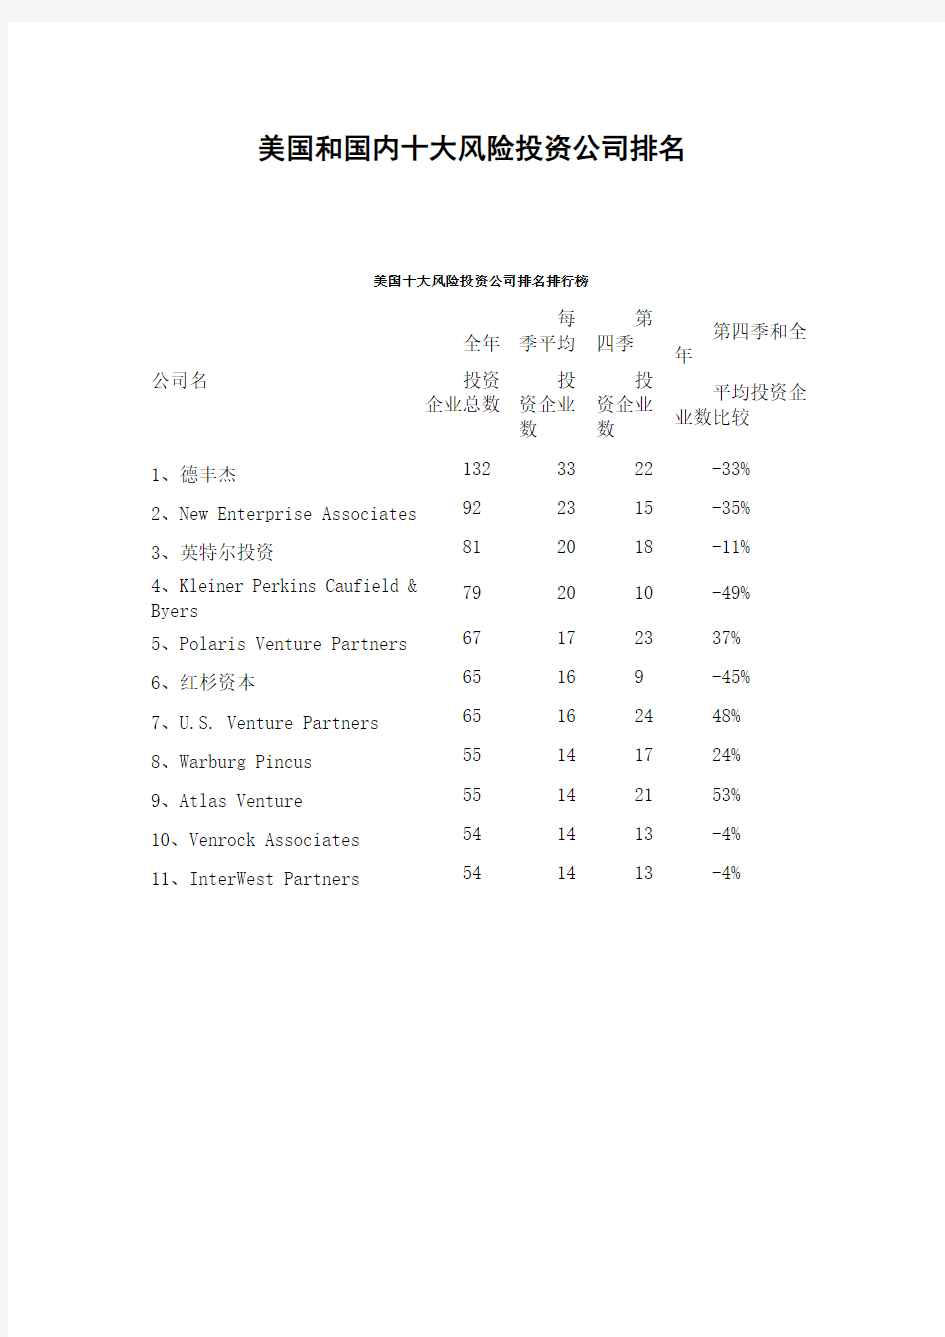 美国和中国十大风险投资公司排名